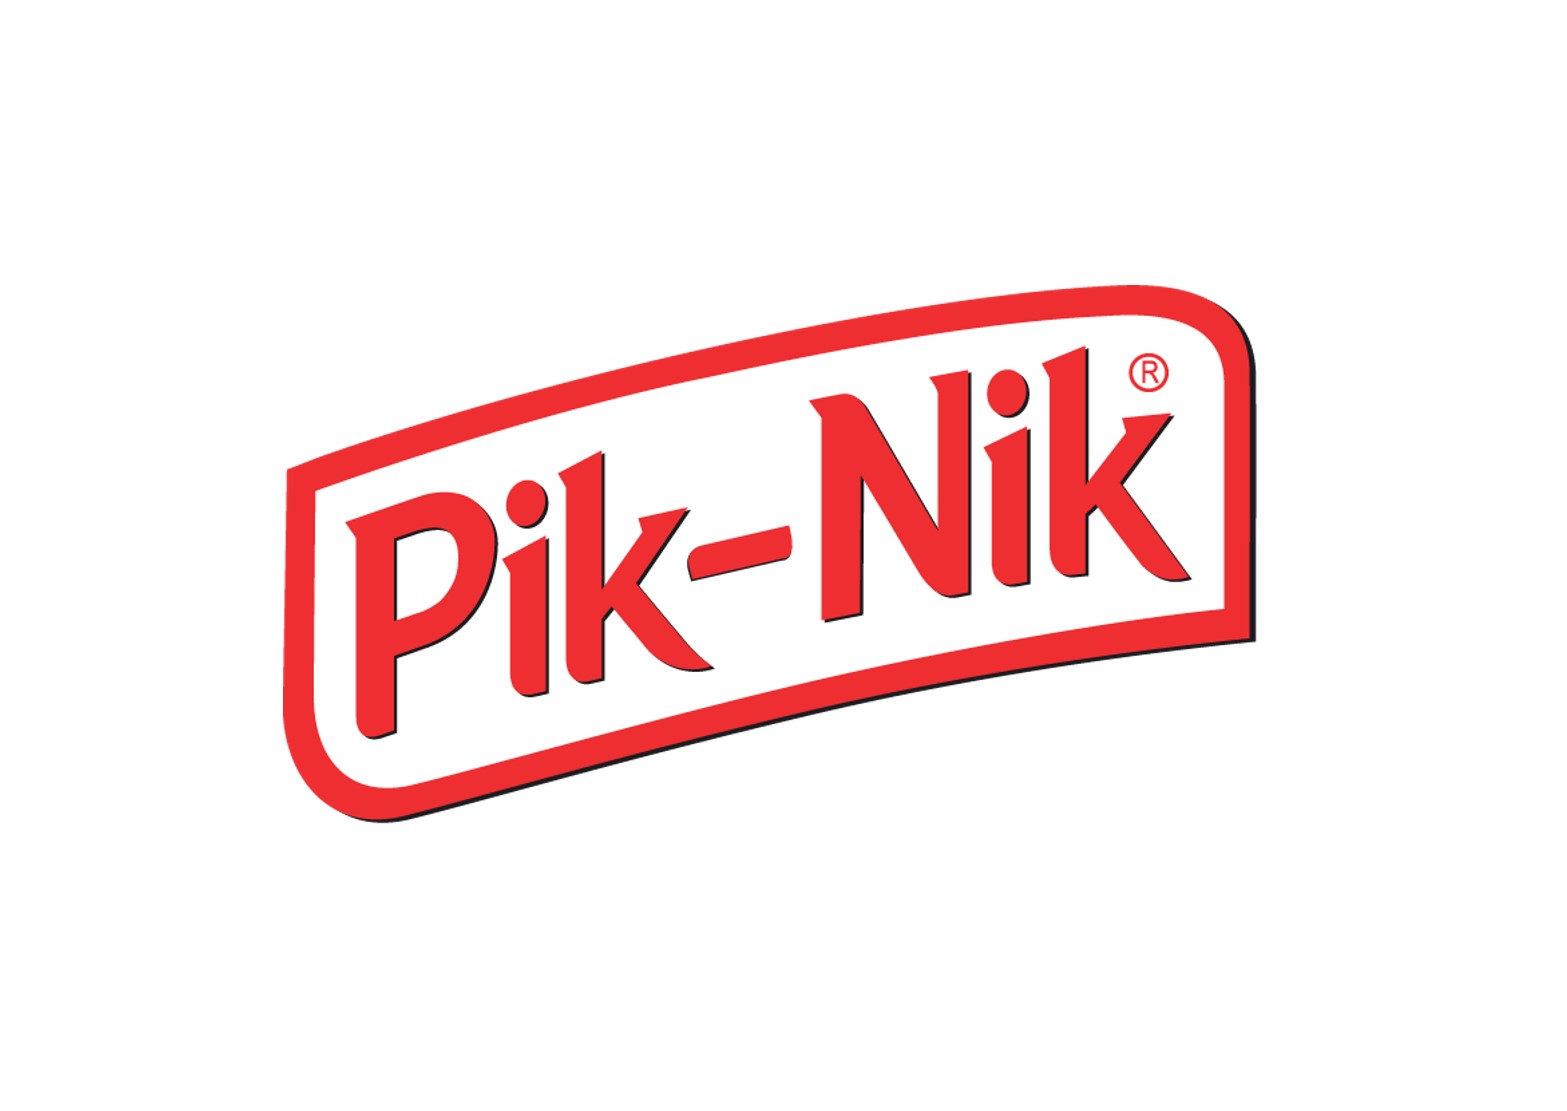 Pik Nik